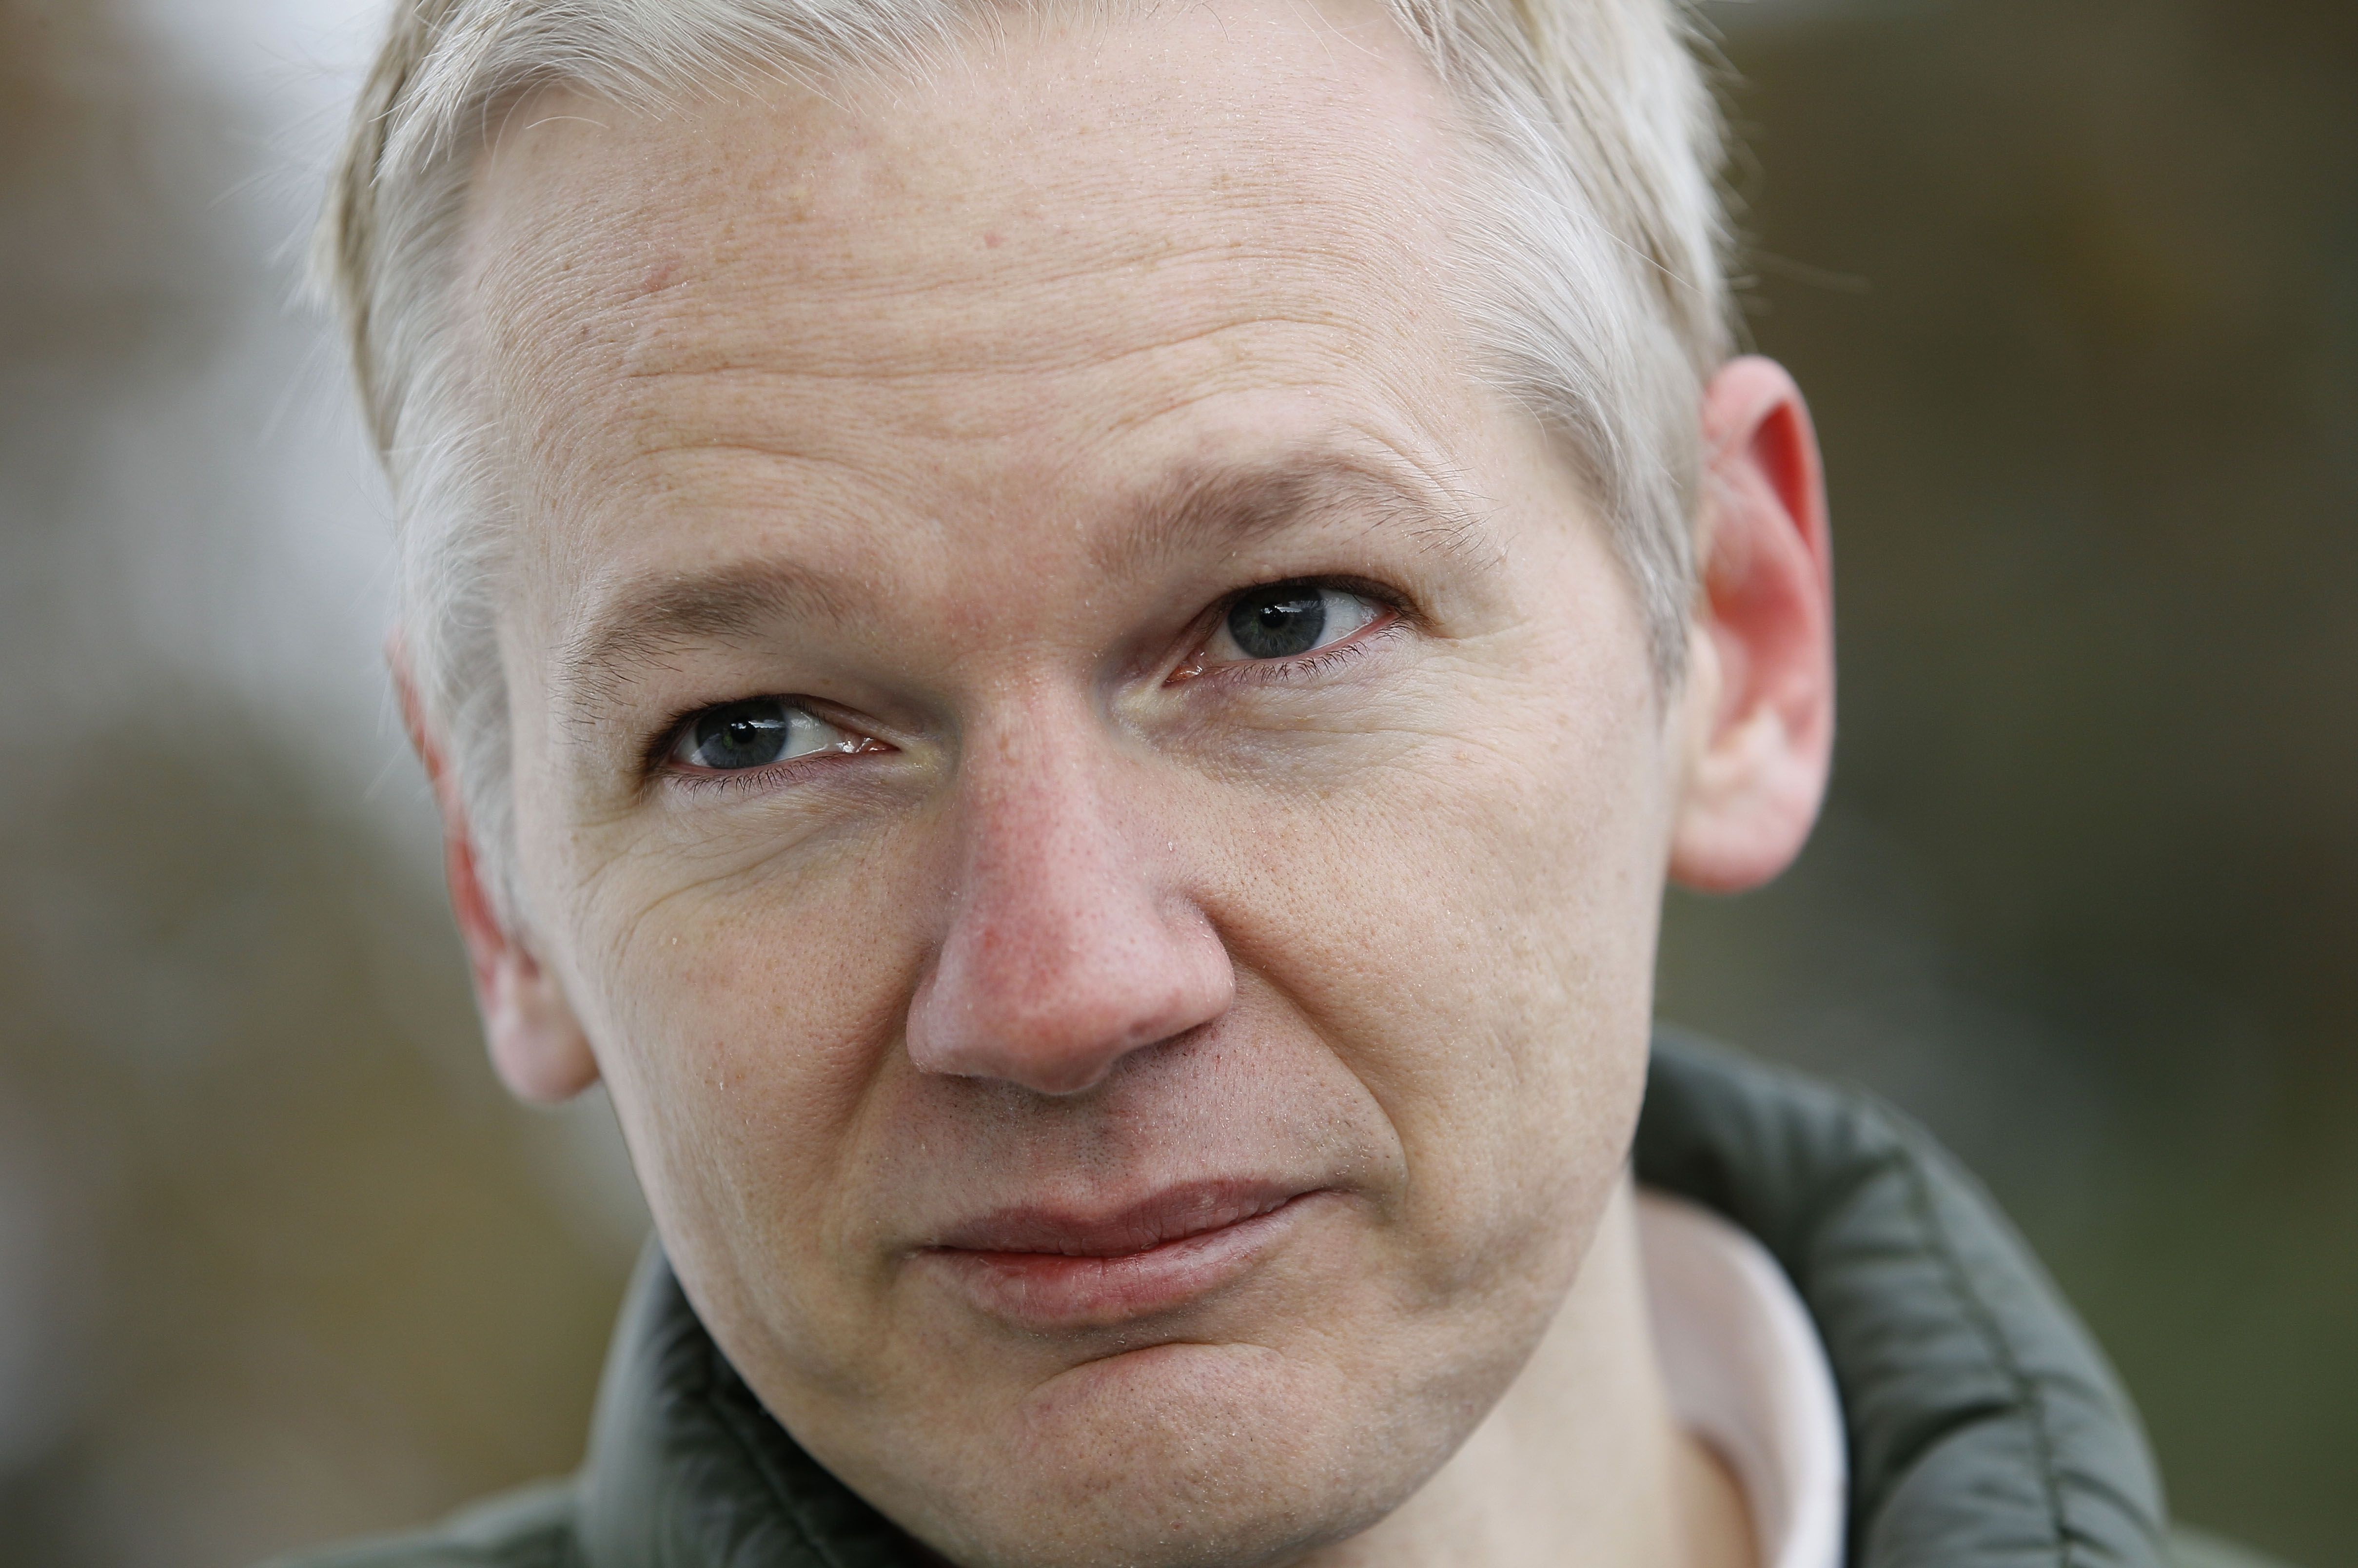 Våldtäkt , Sexualbrott, Brott och straff, Julian Assange, Förhörsledare, Wikileaks